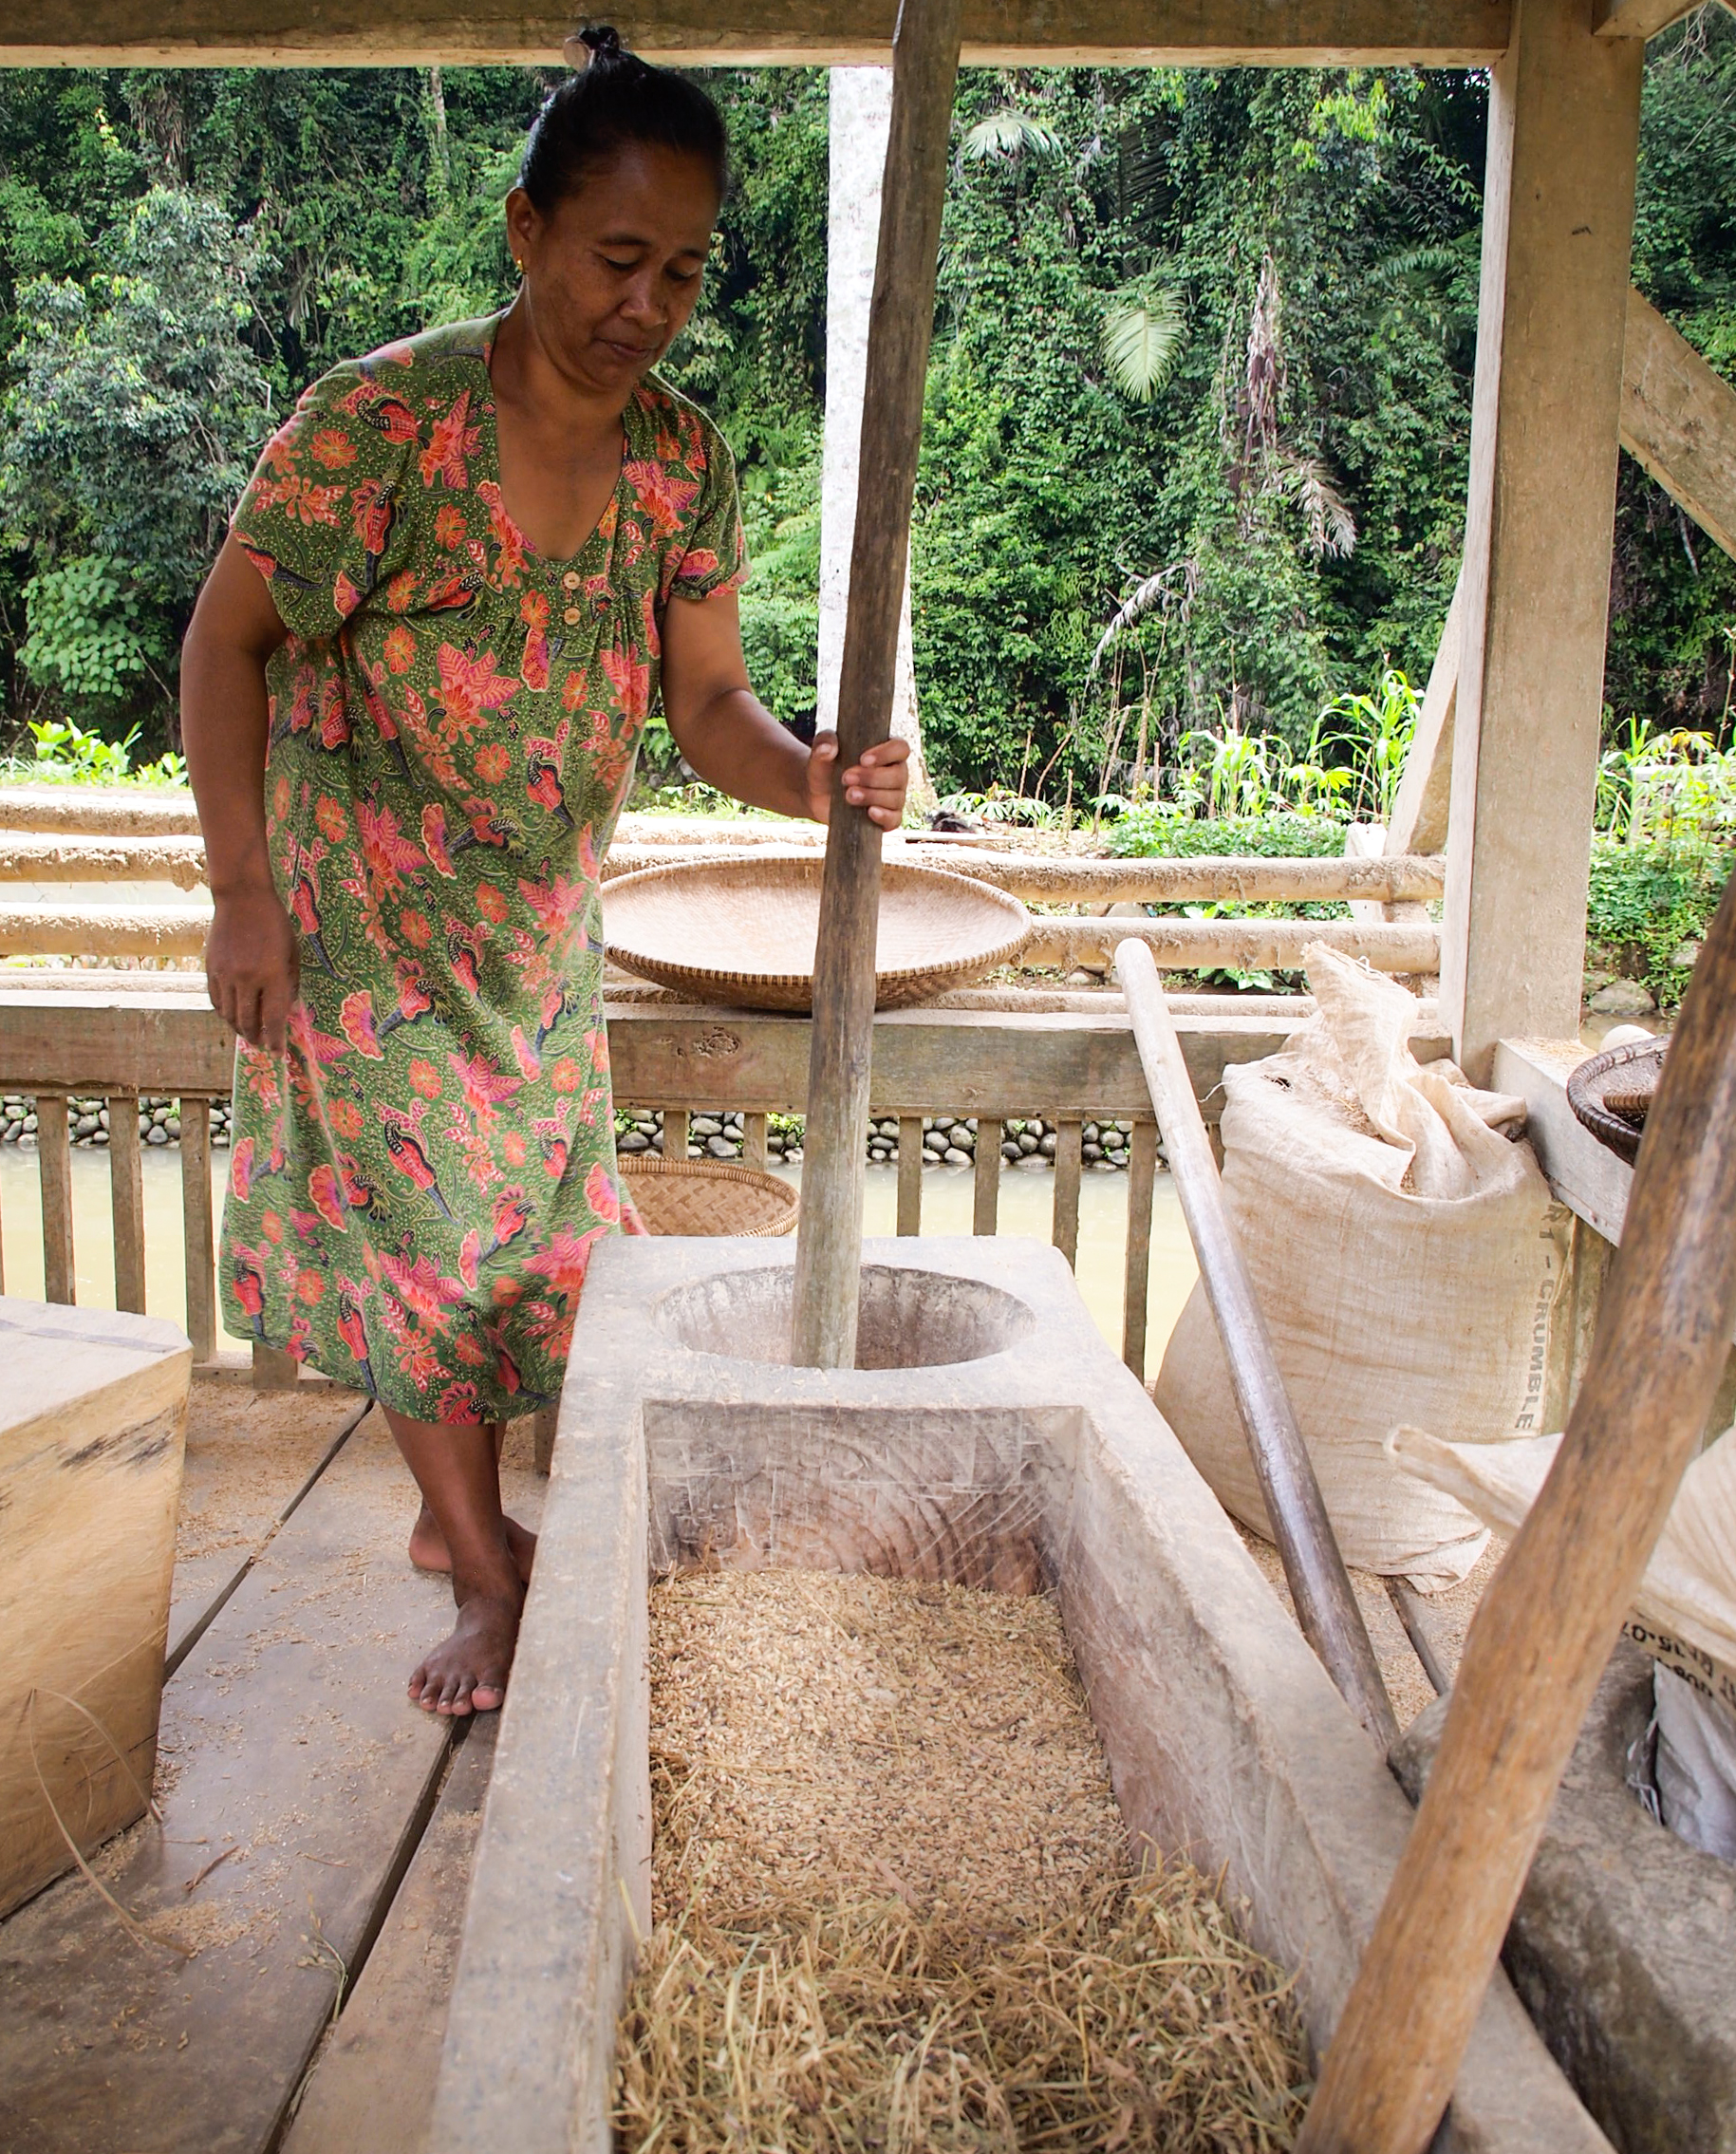 pounding rice in Kampung Naga Tasikmalaya